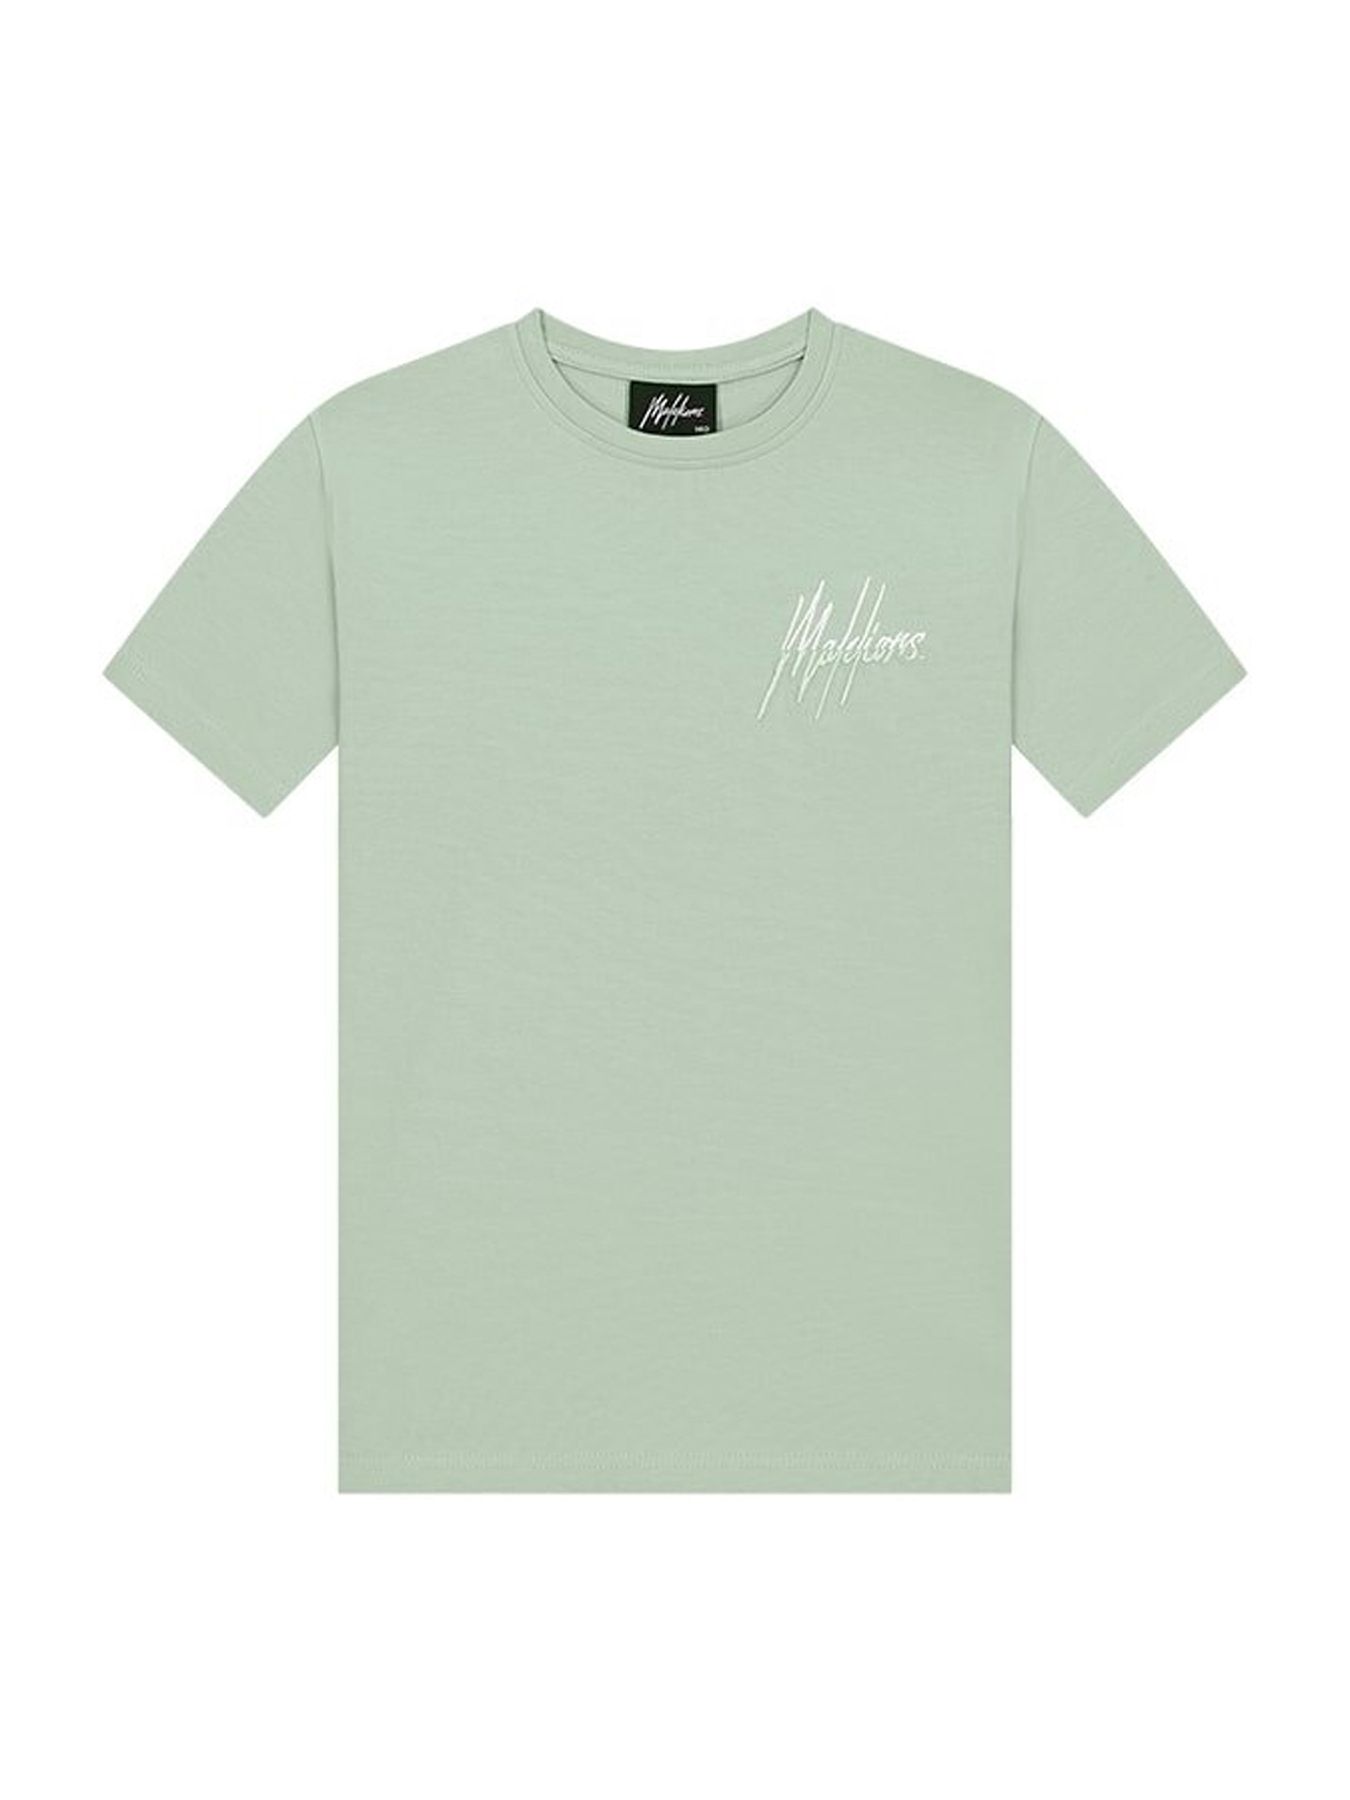 Malelions Mj1-ss24-07 T-shirt kids Mint 2900145131097